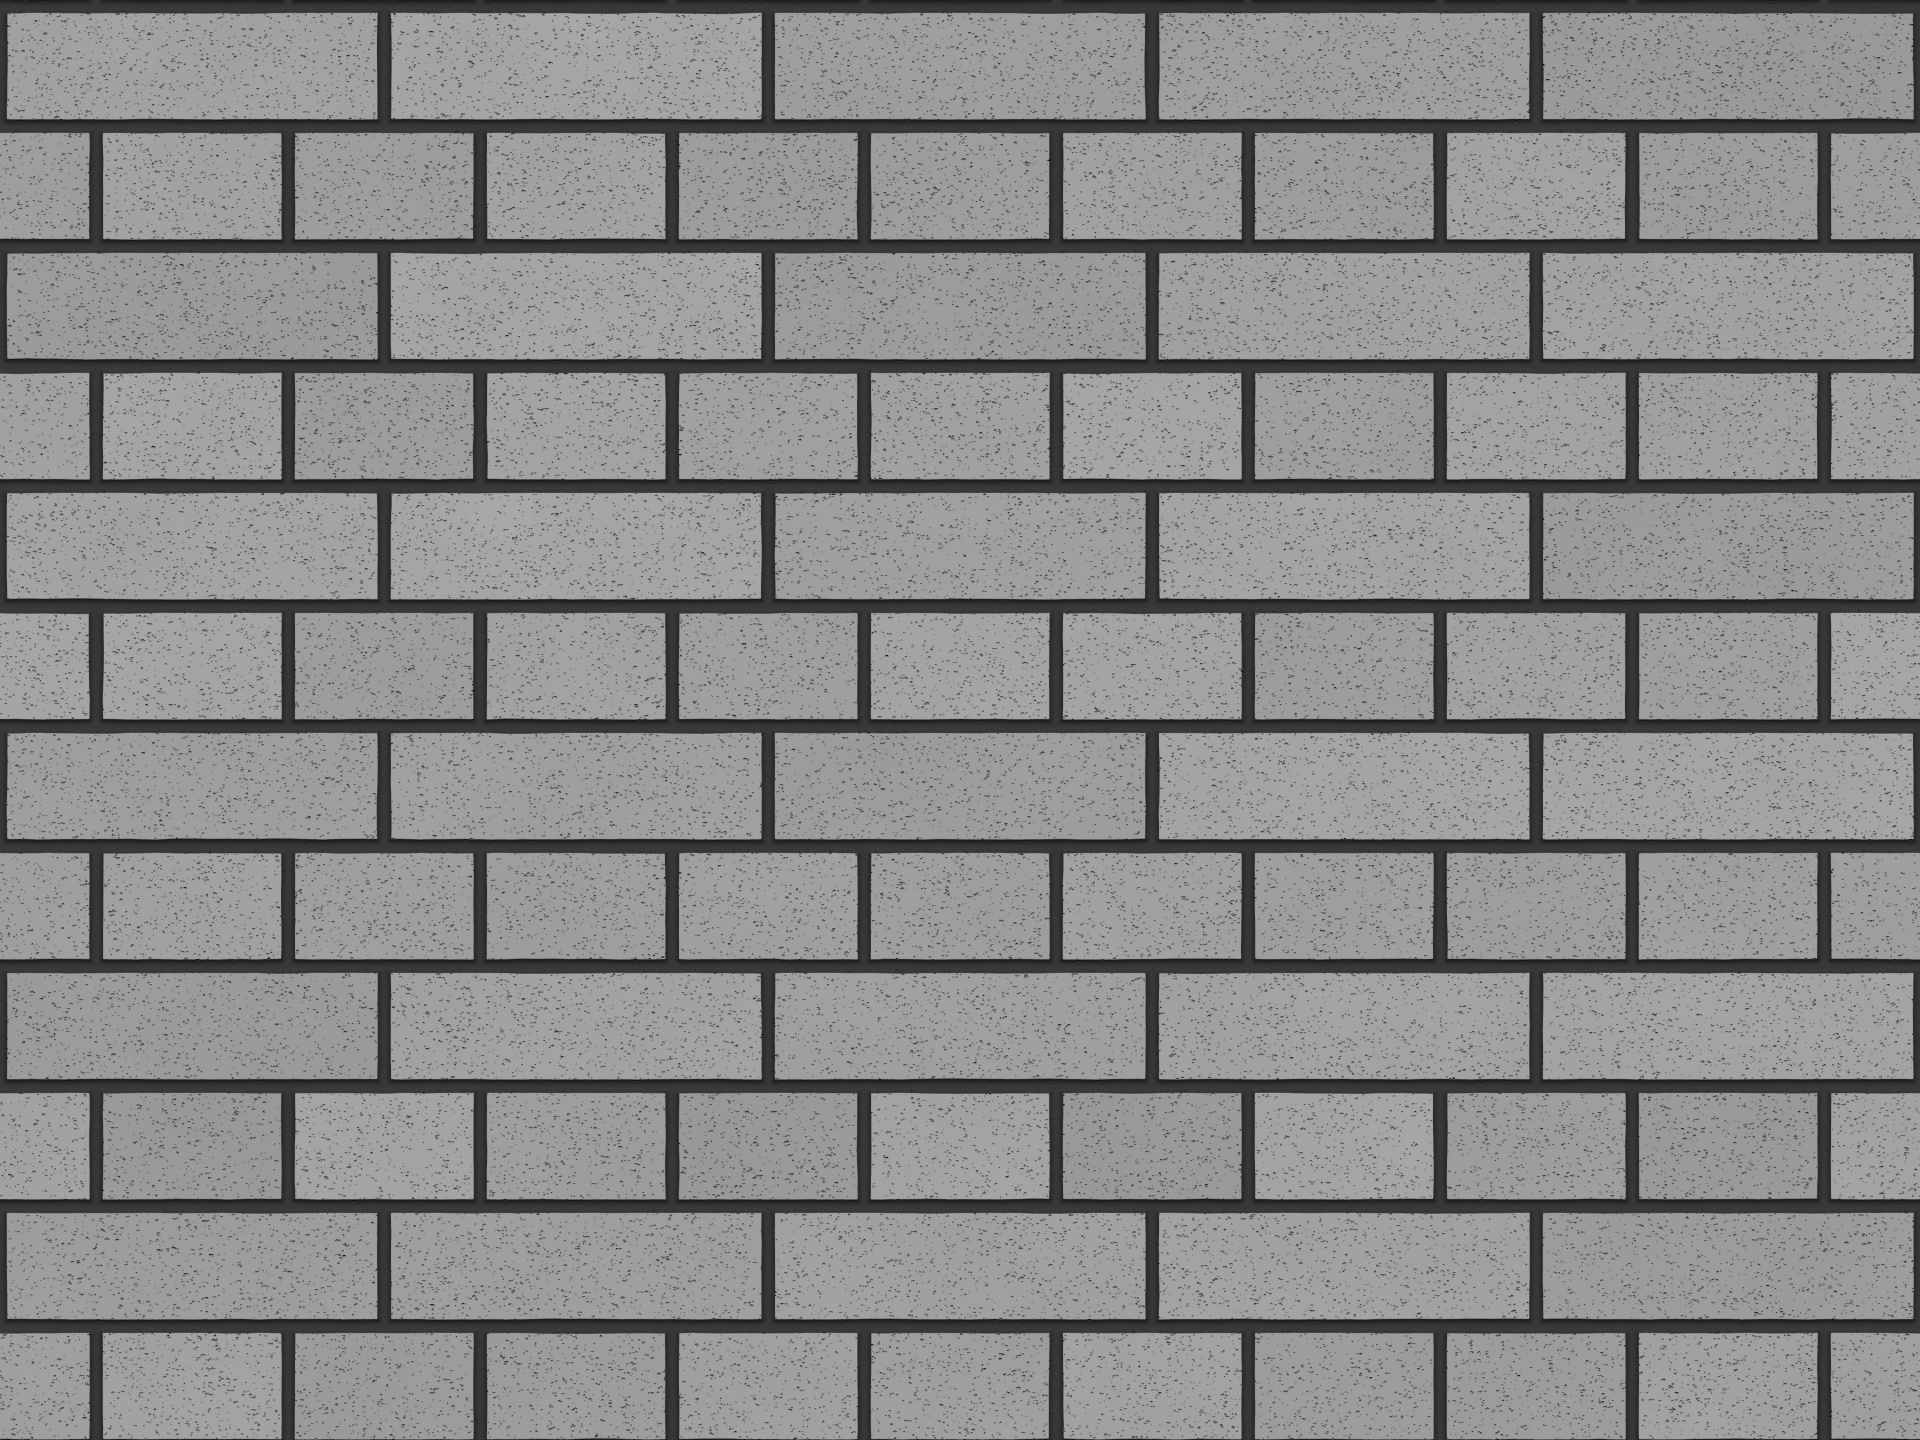 Brick Wall 2